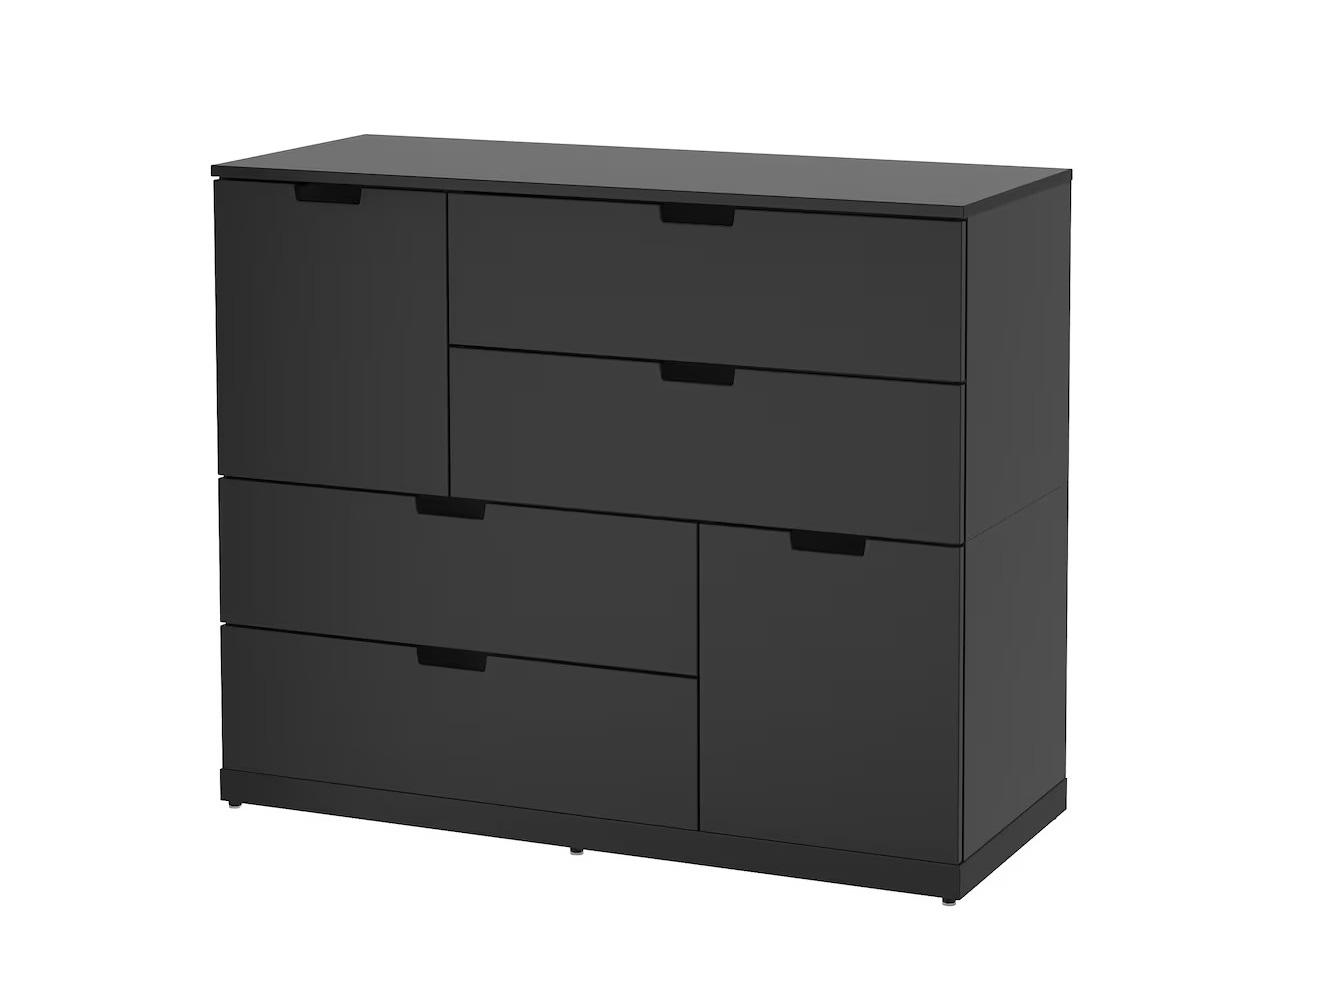 Комод Нордли 34 black ИКЕА (IKEA) изображение товара